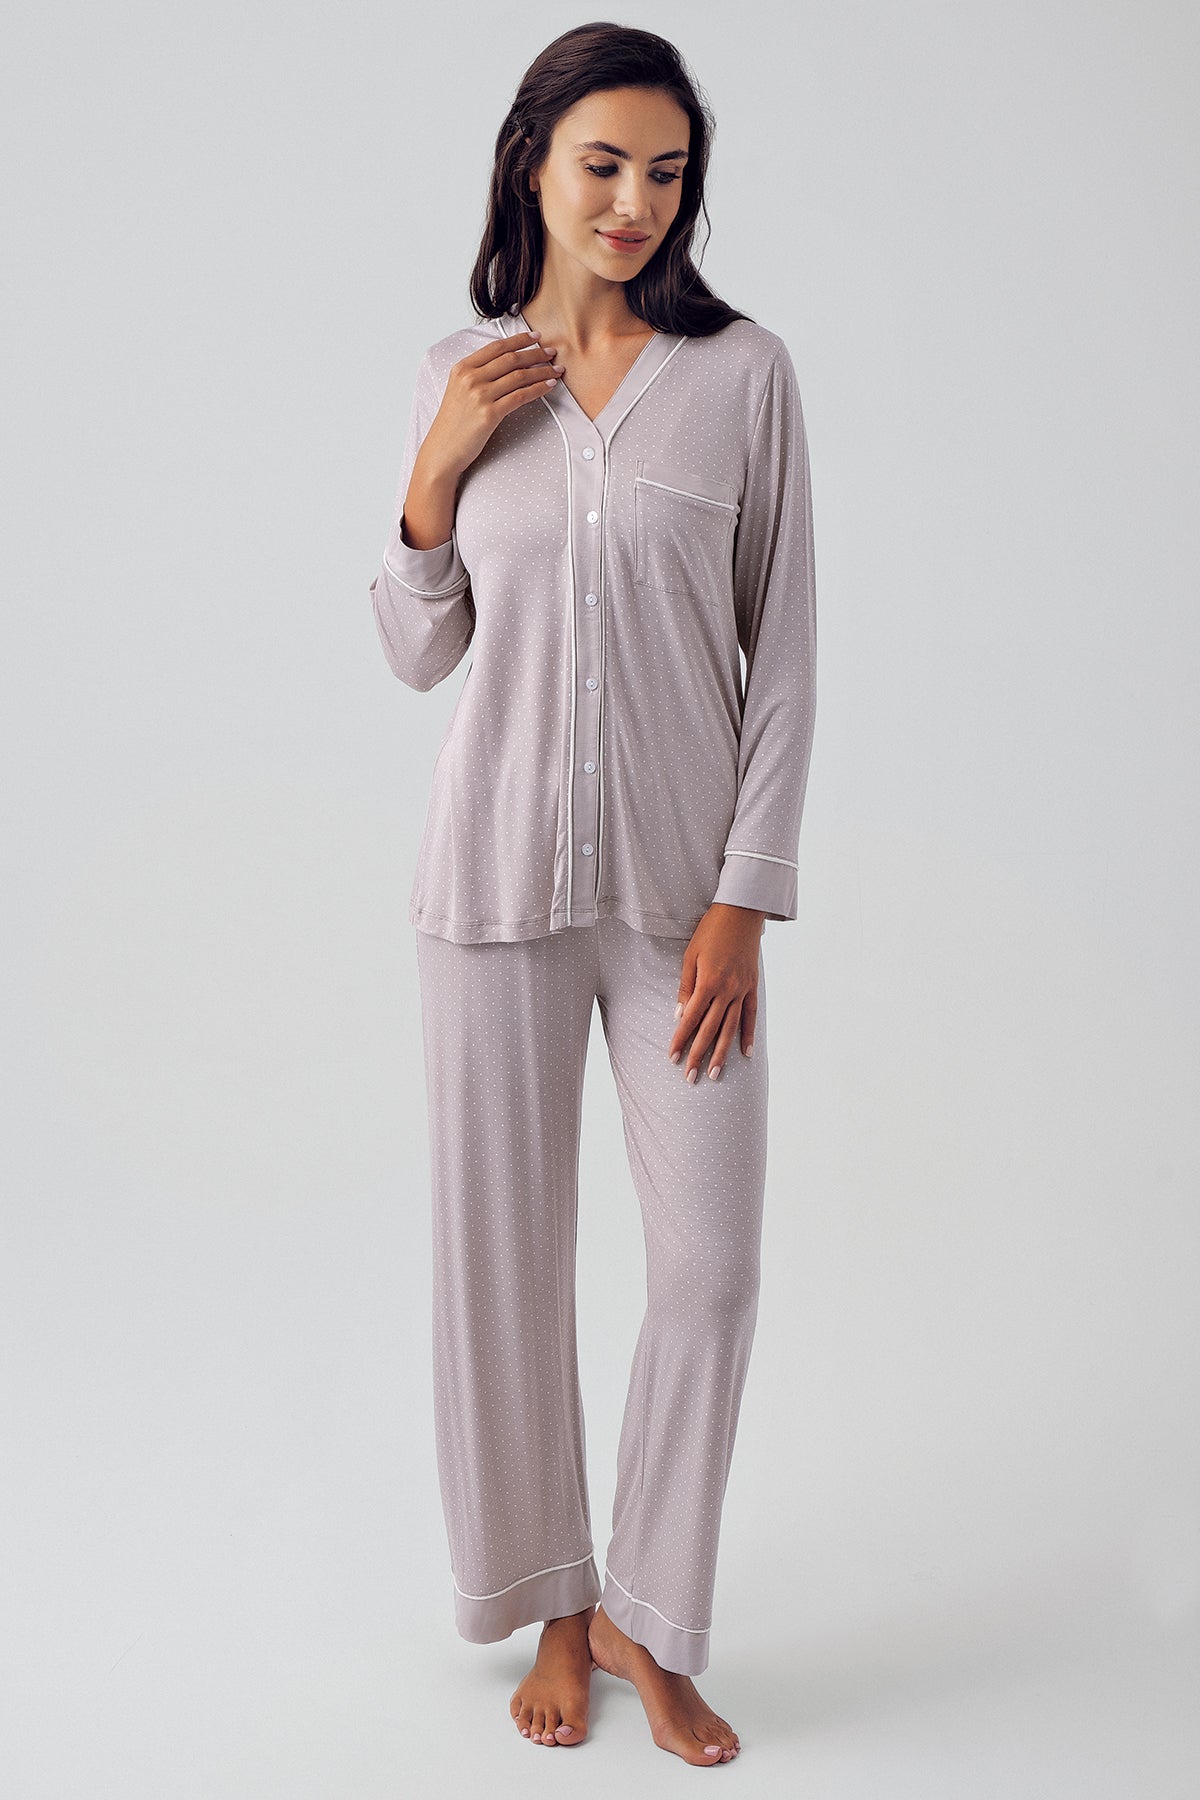 Polka Dot Maternity & Nursing Pajamas Coffee - 15201